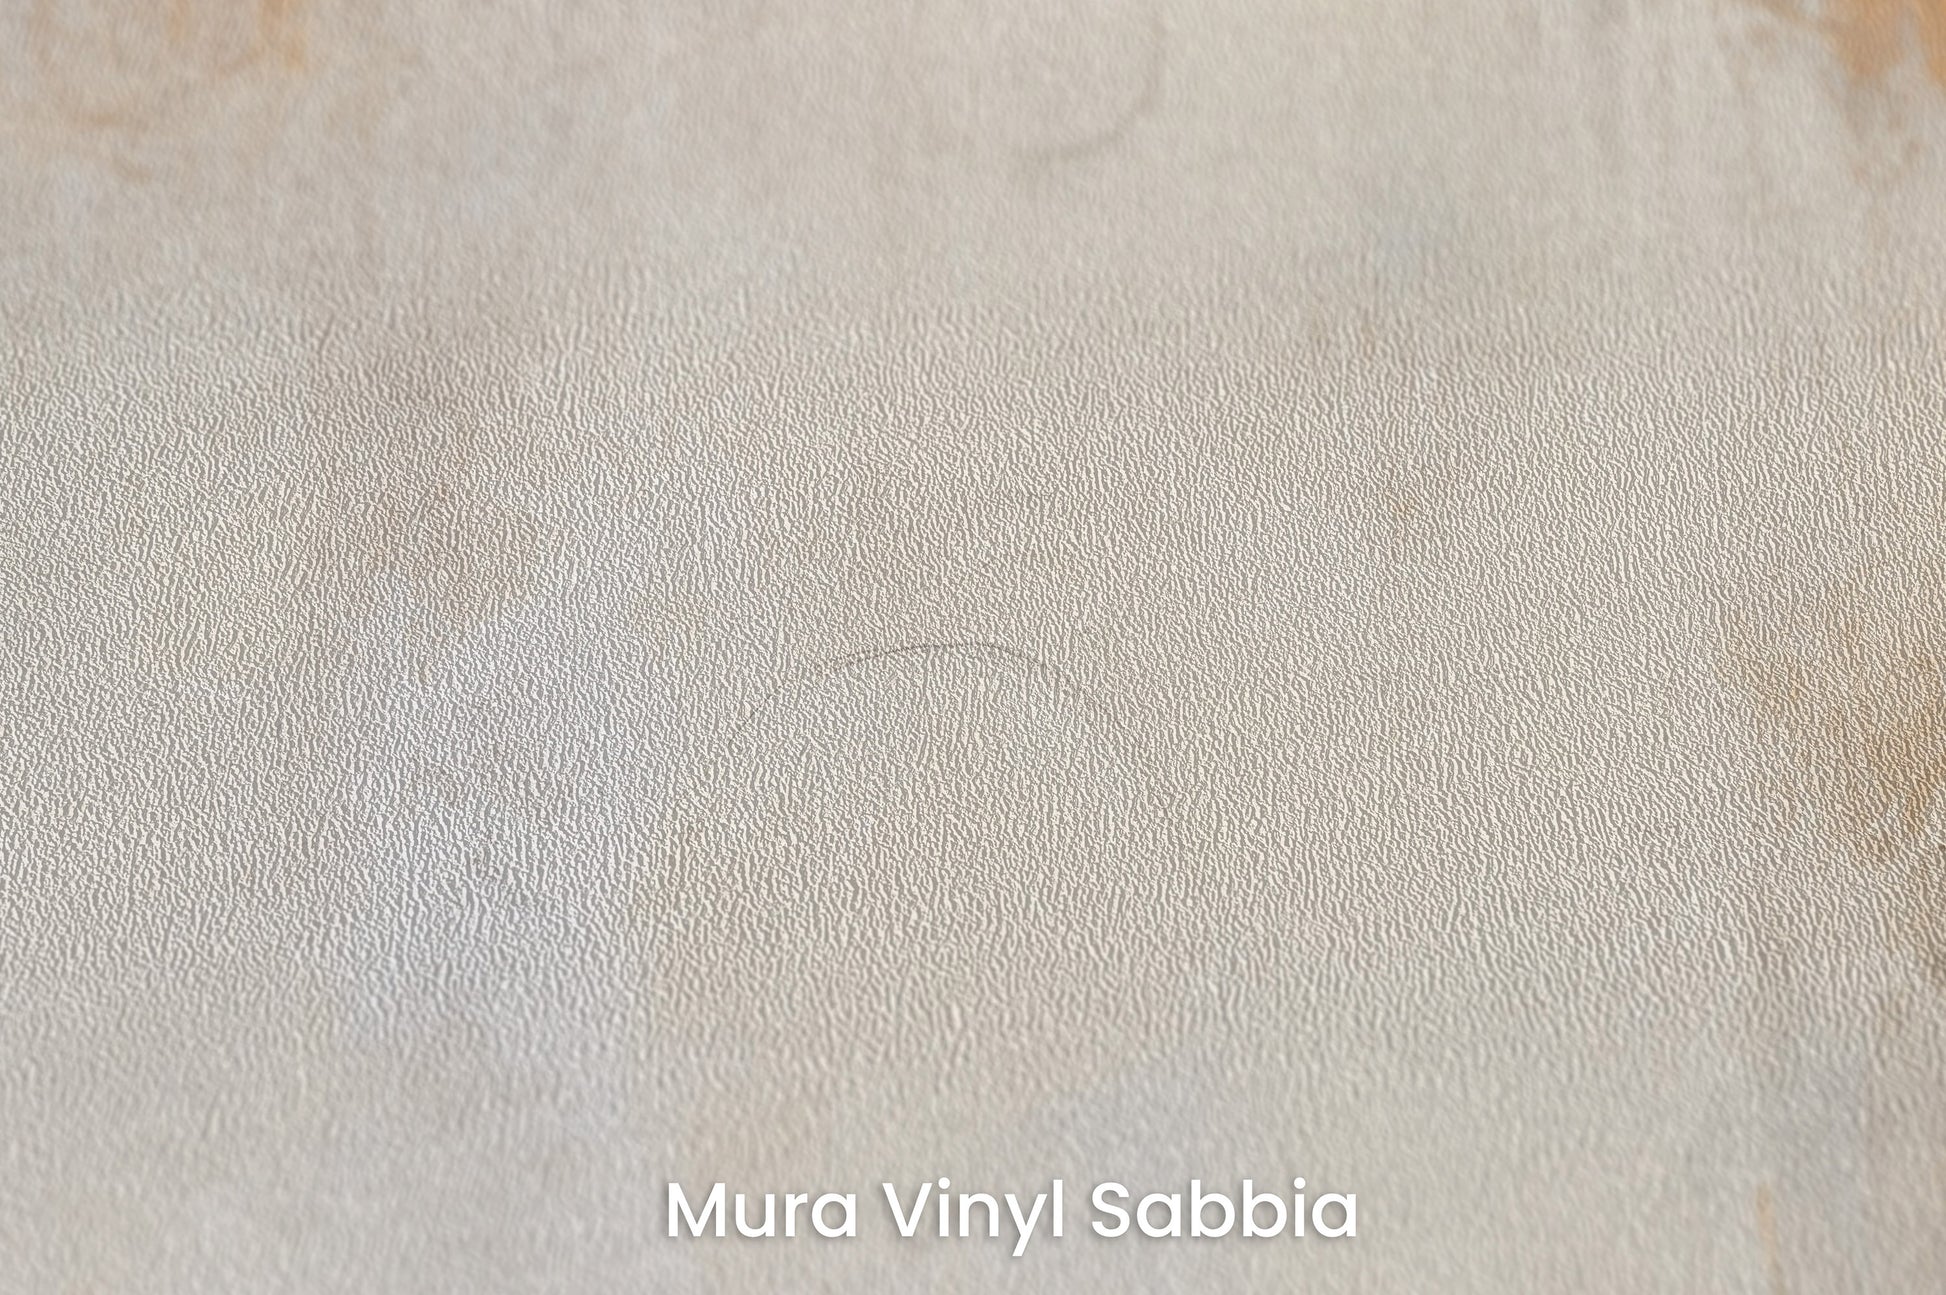 Zbliżenie na artystyczną fototapetę o nazwie ETHEREAL ECHOES ARTISTRY na podłożu Mura Vinyl Sabbia struktura grubego ziarna piasku.